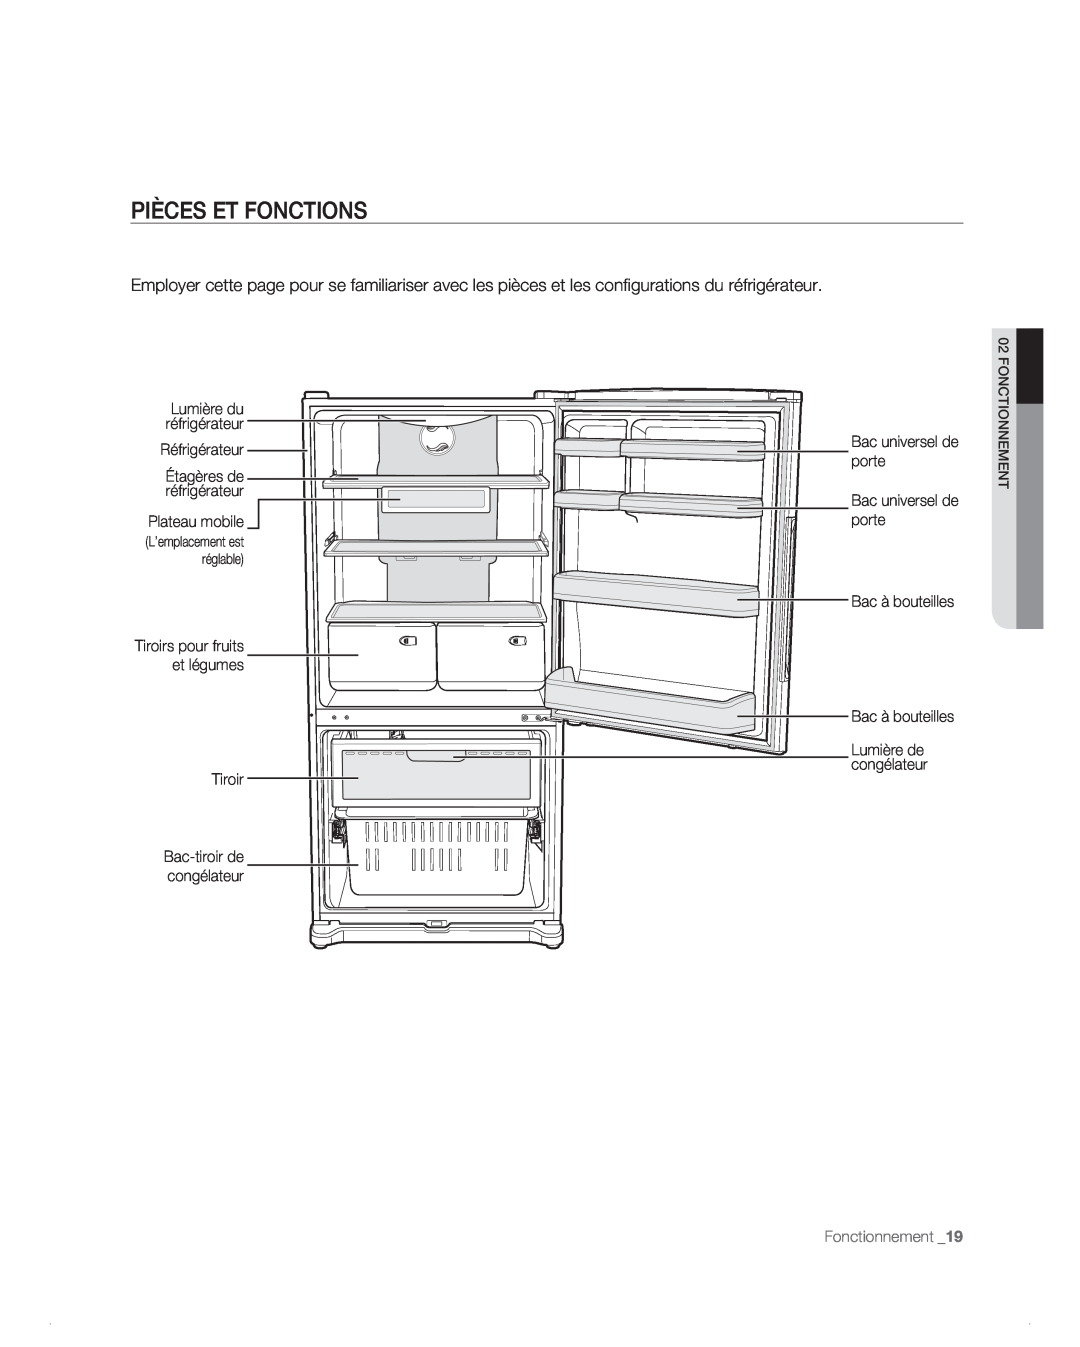 Samsung RB196AB, RB194AB manual Pièces Et Fonctions, Réfrigérateur, Plateau mobile, Tiroir, Bac à bouteilles, Fonctionnement 